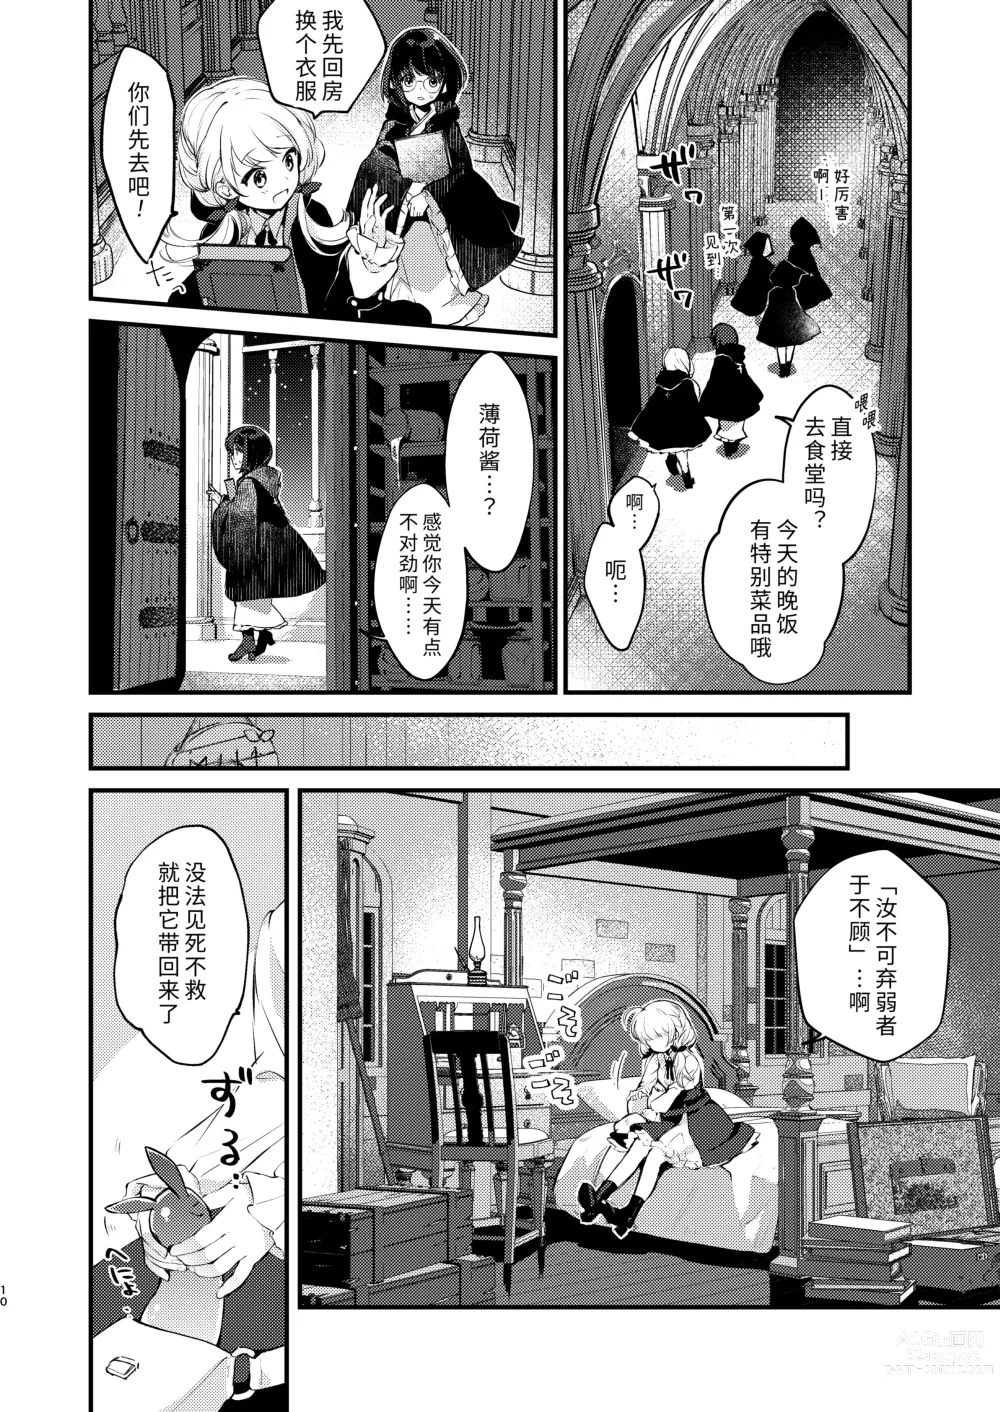 Page 9 of doujinshi Himitsu no Tomodachi - The Secret Friend